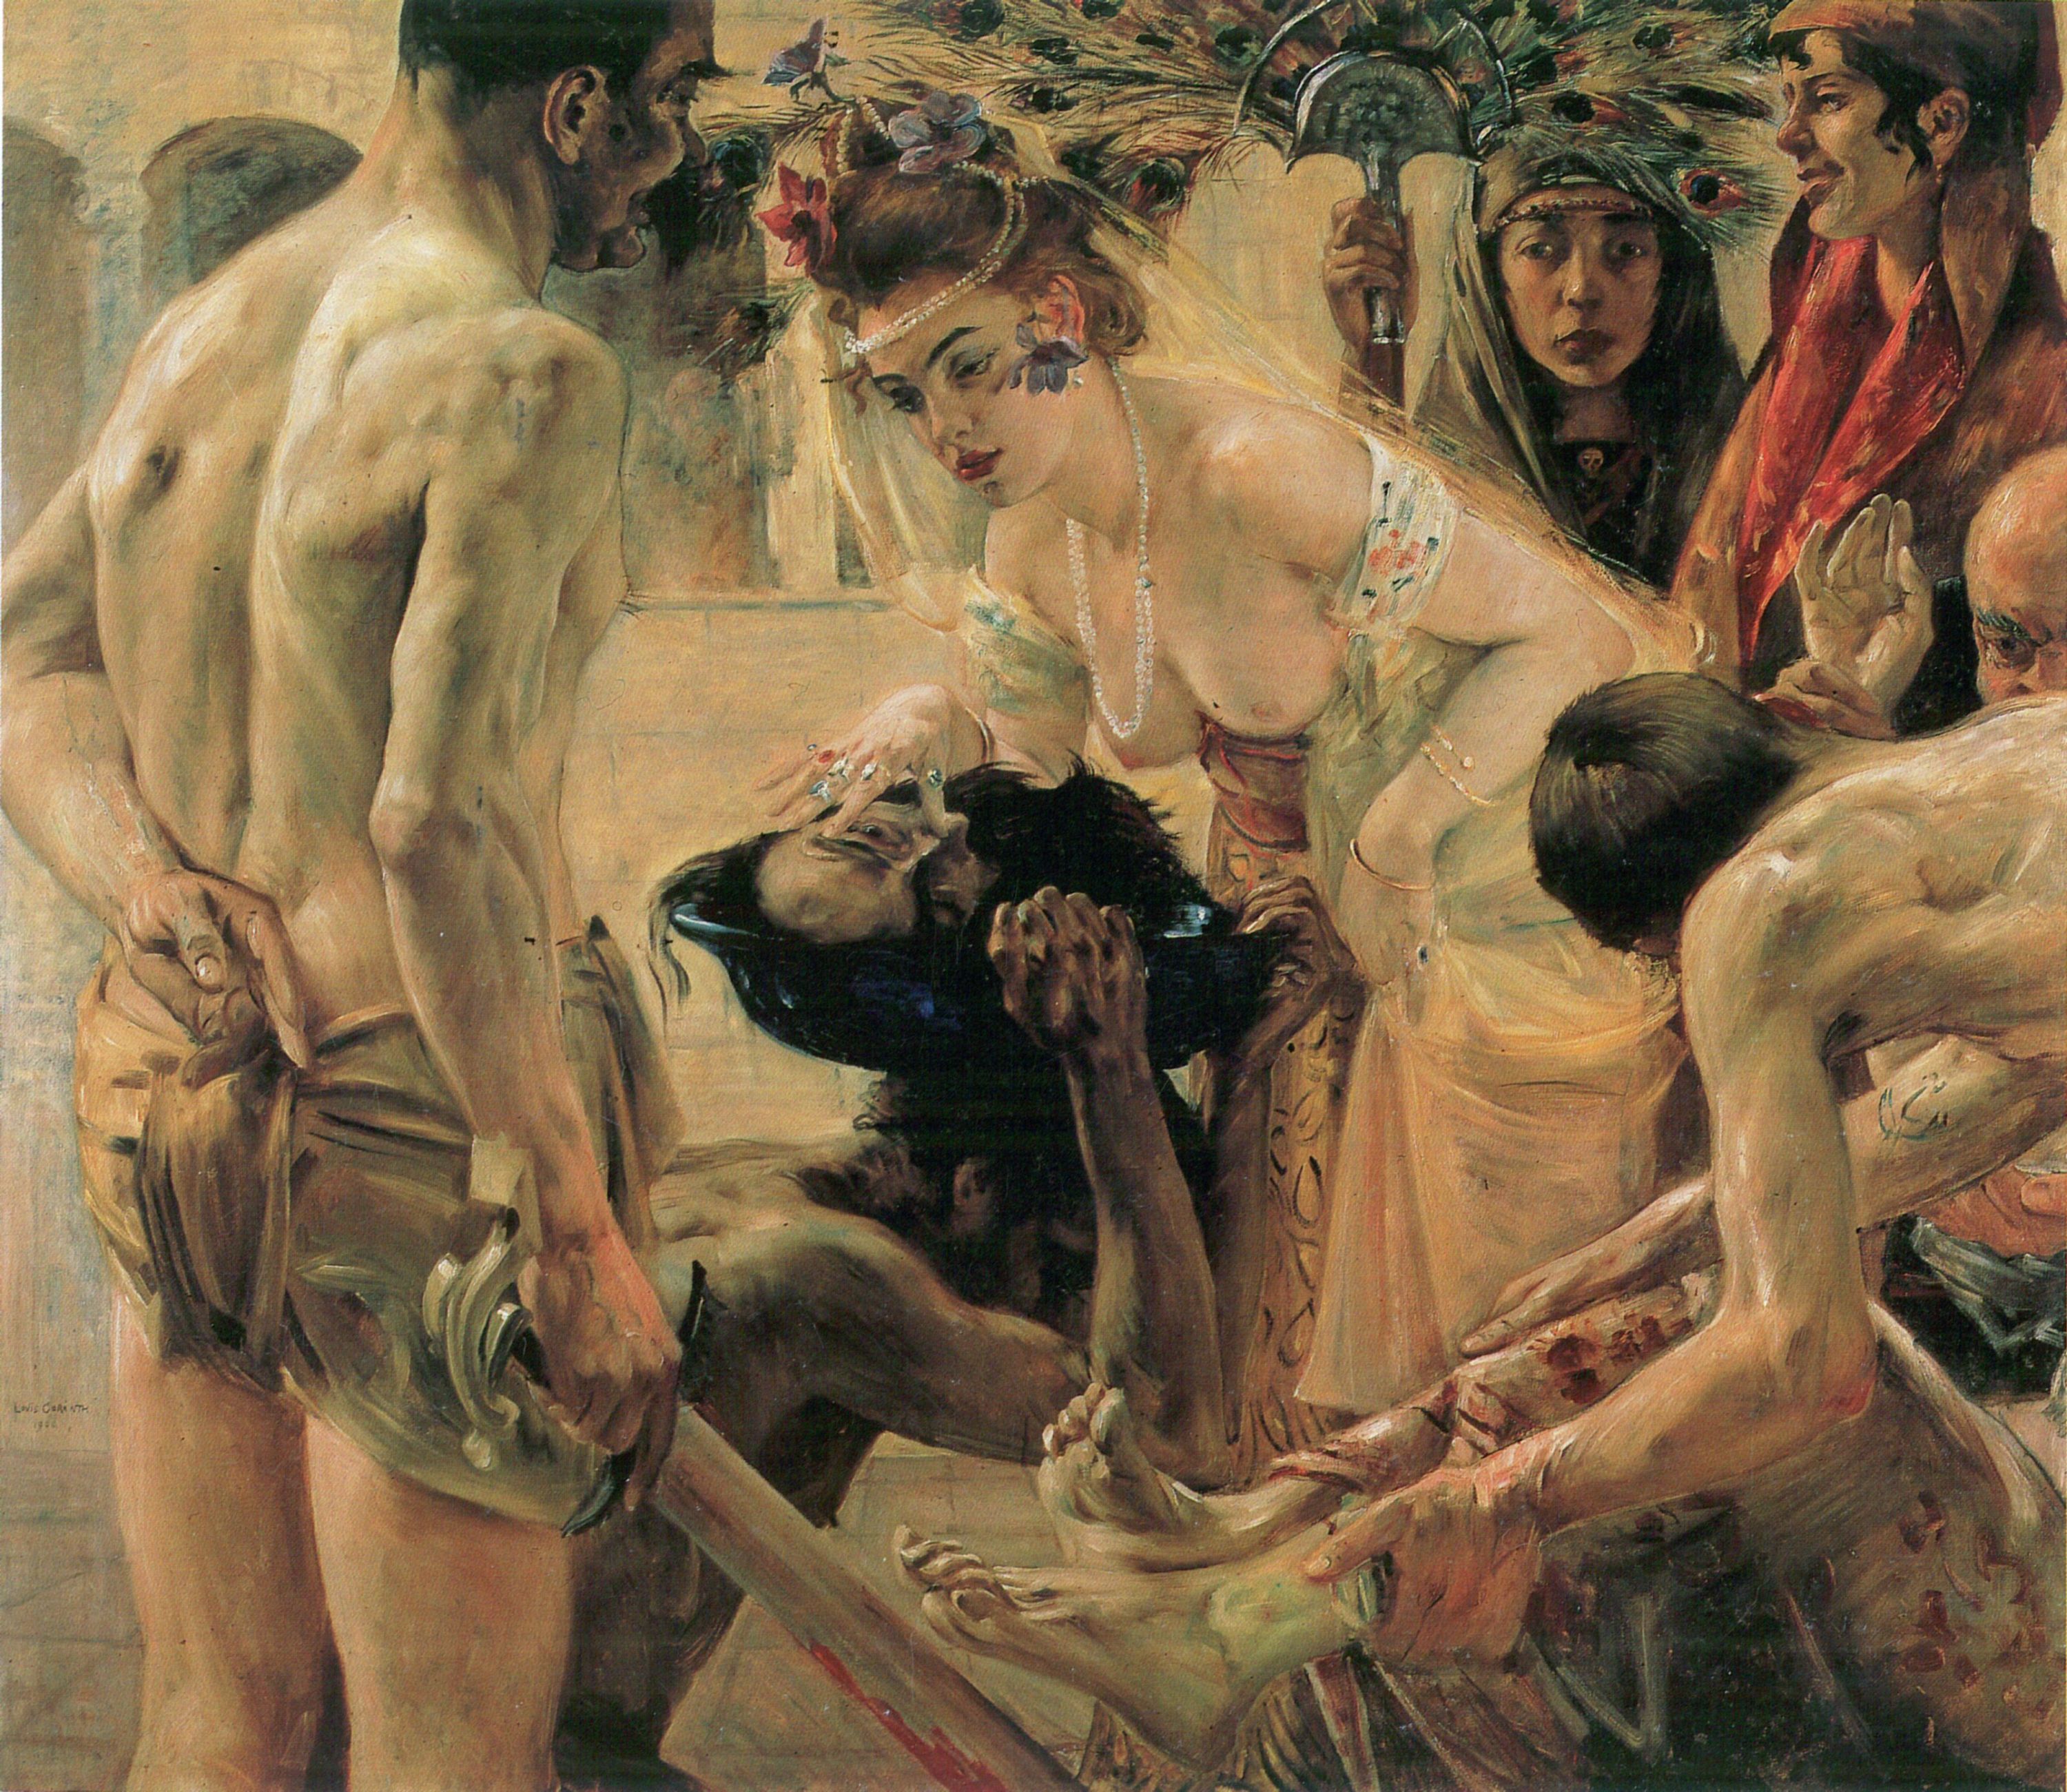 Salomé II by Lovis Corinth - 1889 - 76.2 x 83.5 cm 